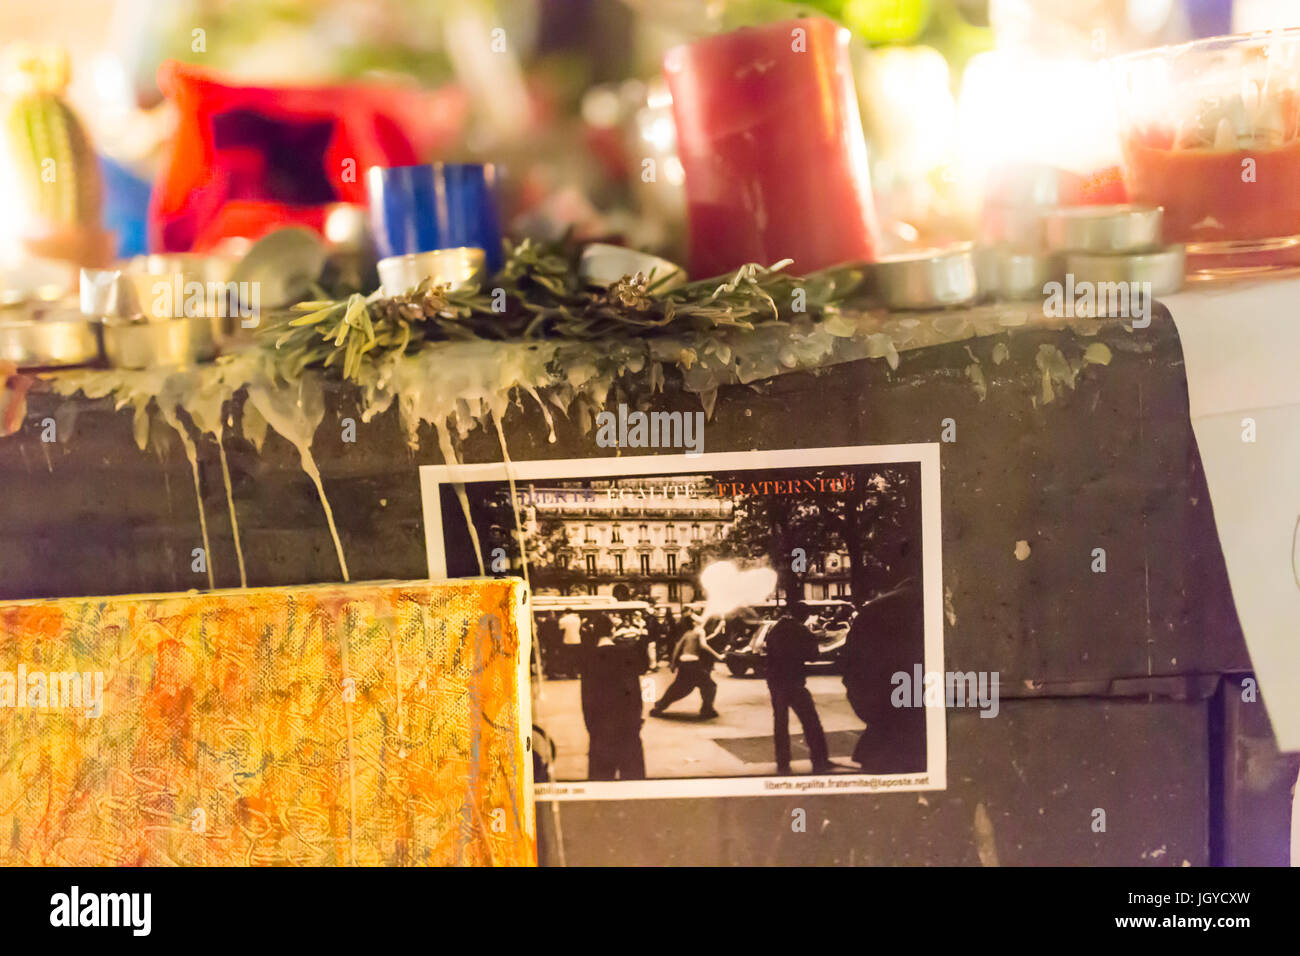 Französische Motto auf einer Postkarte. Spontane Hommage an die Opfer der Terroranschläge in Paris, den 13. November 2015. Stockfoto